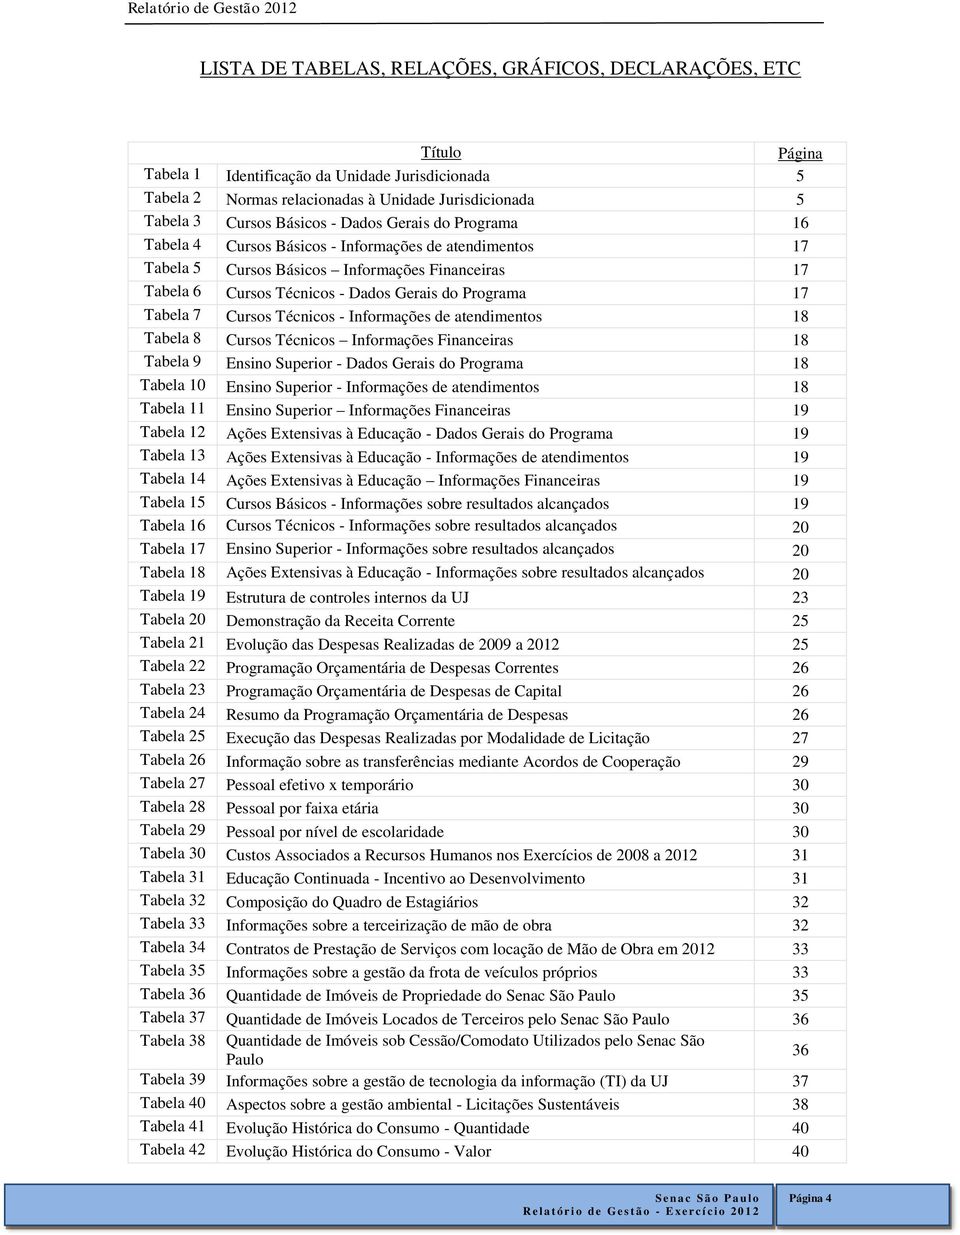 Gerais do Programa 17 Tabela 7 Cursos Técnicos - Informações de atendimentos 18 Tabela 8 Cursos Técnicos Informações Financeiras 18 Tabela 9 Ensino Superior - Dados Gerais do Programa 18 Tabela 10